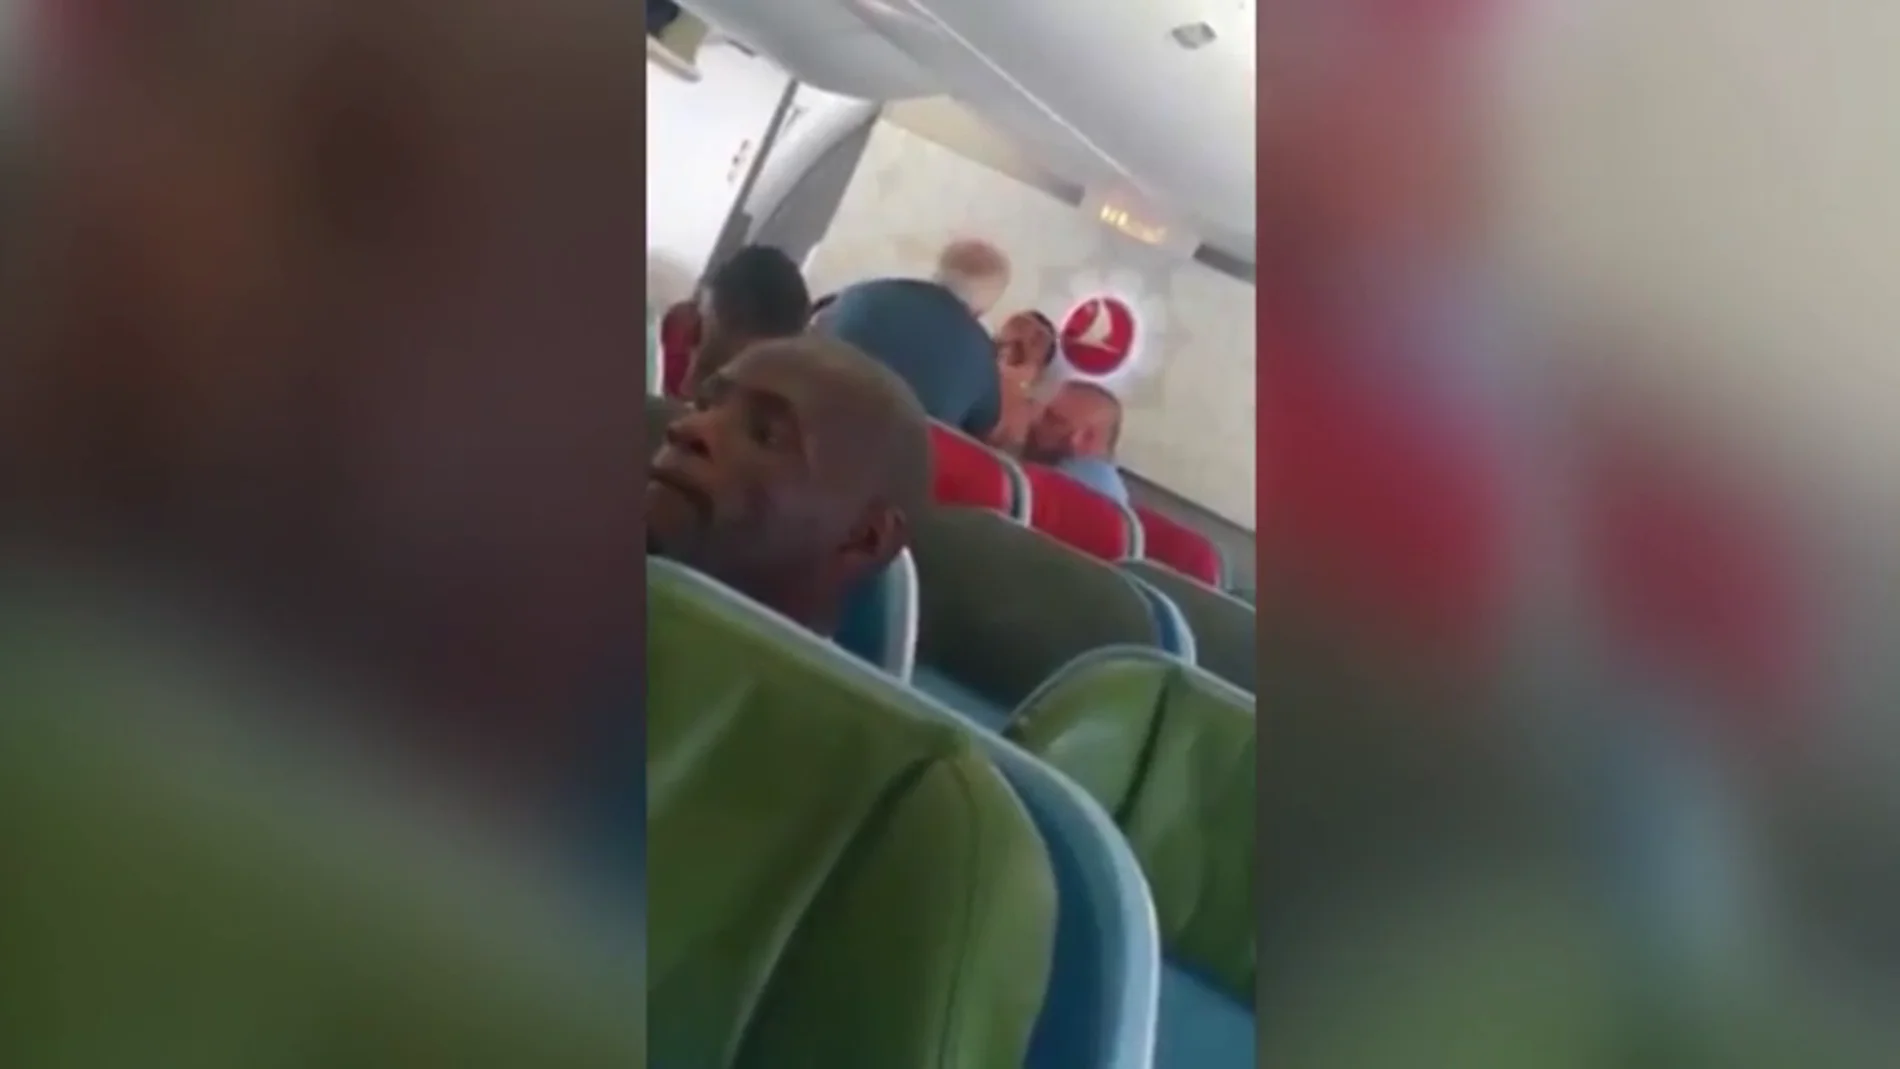 El impactante vídeo de la agresión de un agente de inmigración a un refugiado en un avión de Turkish Airlines